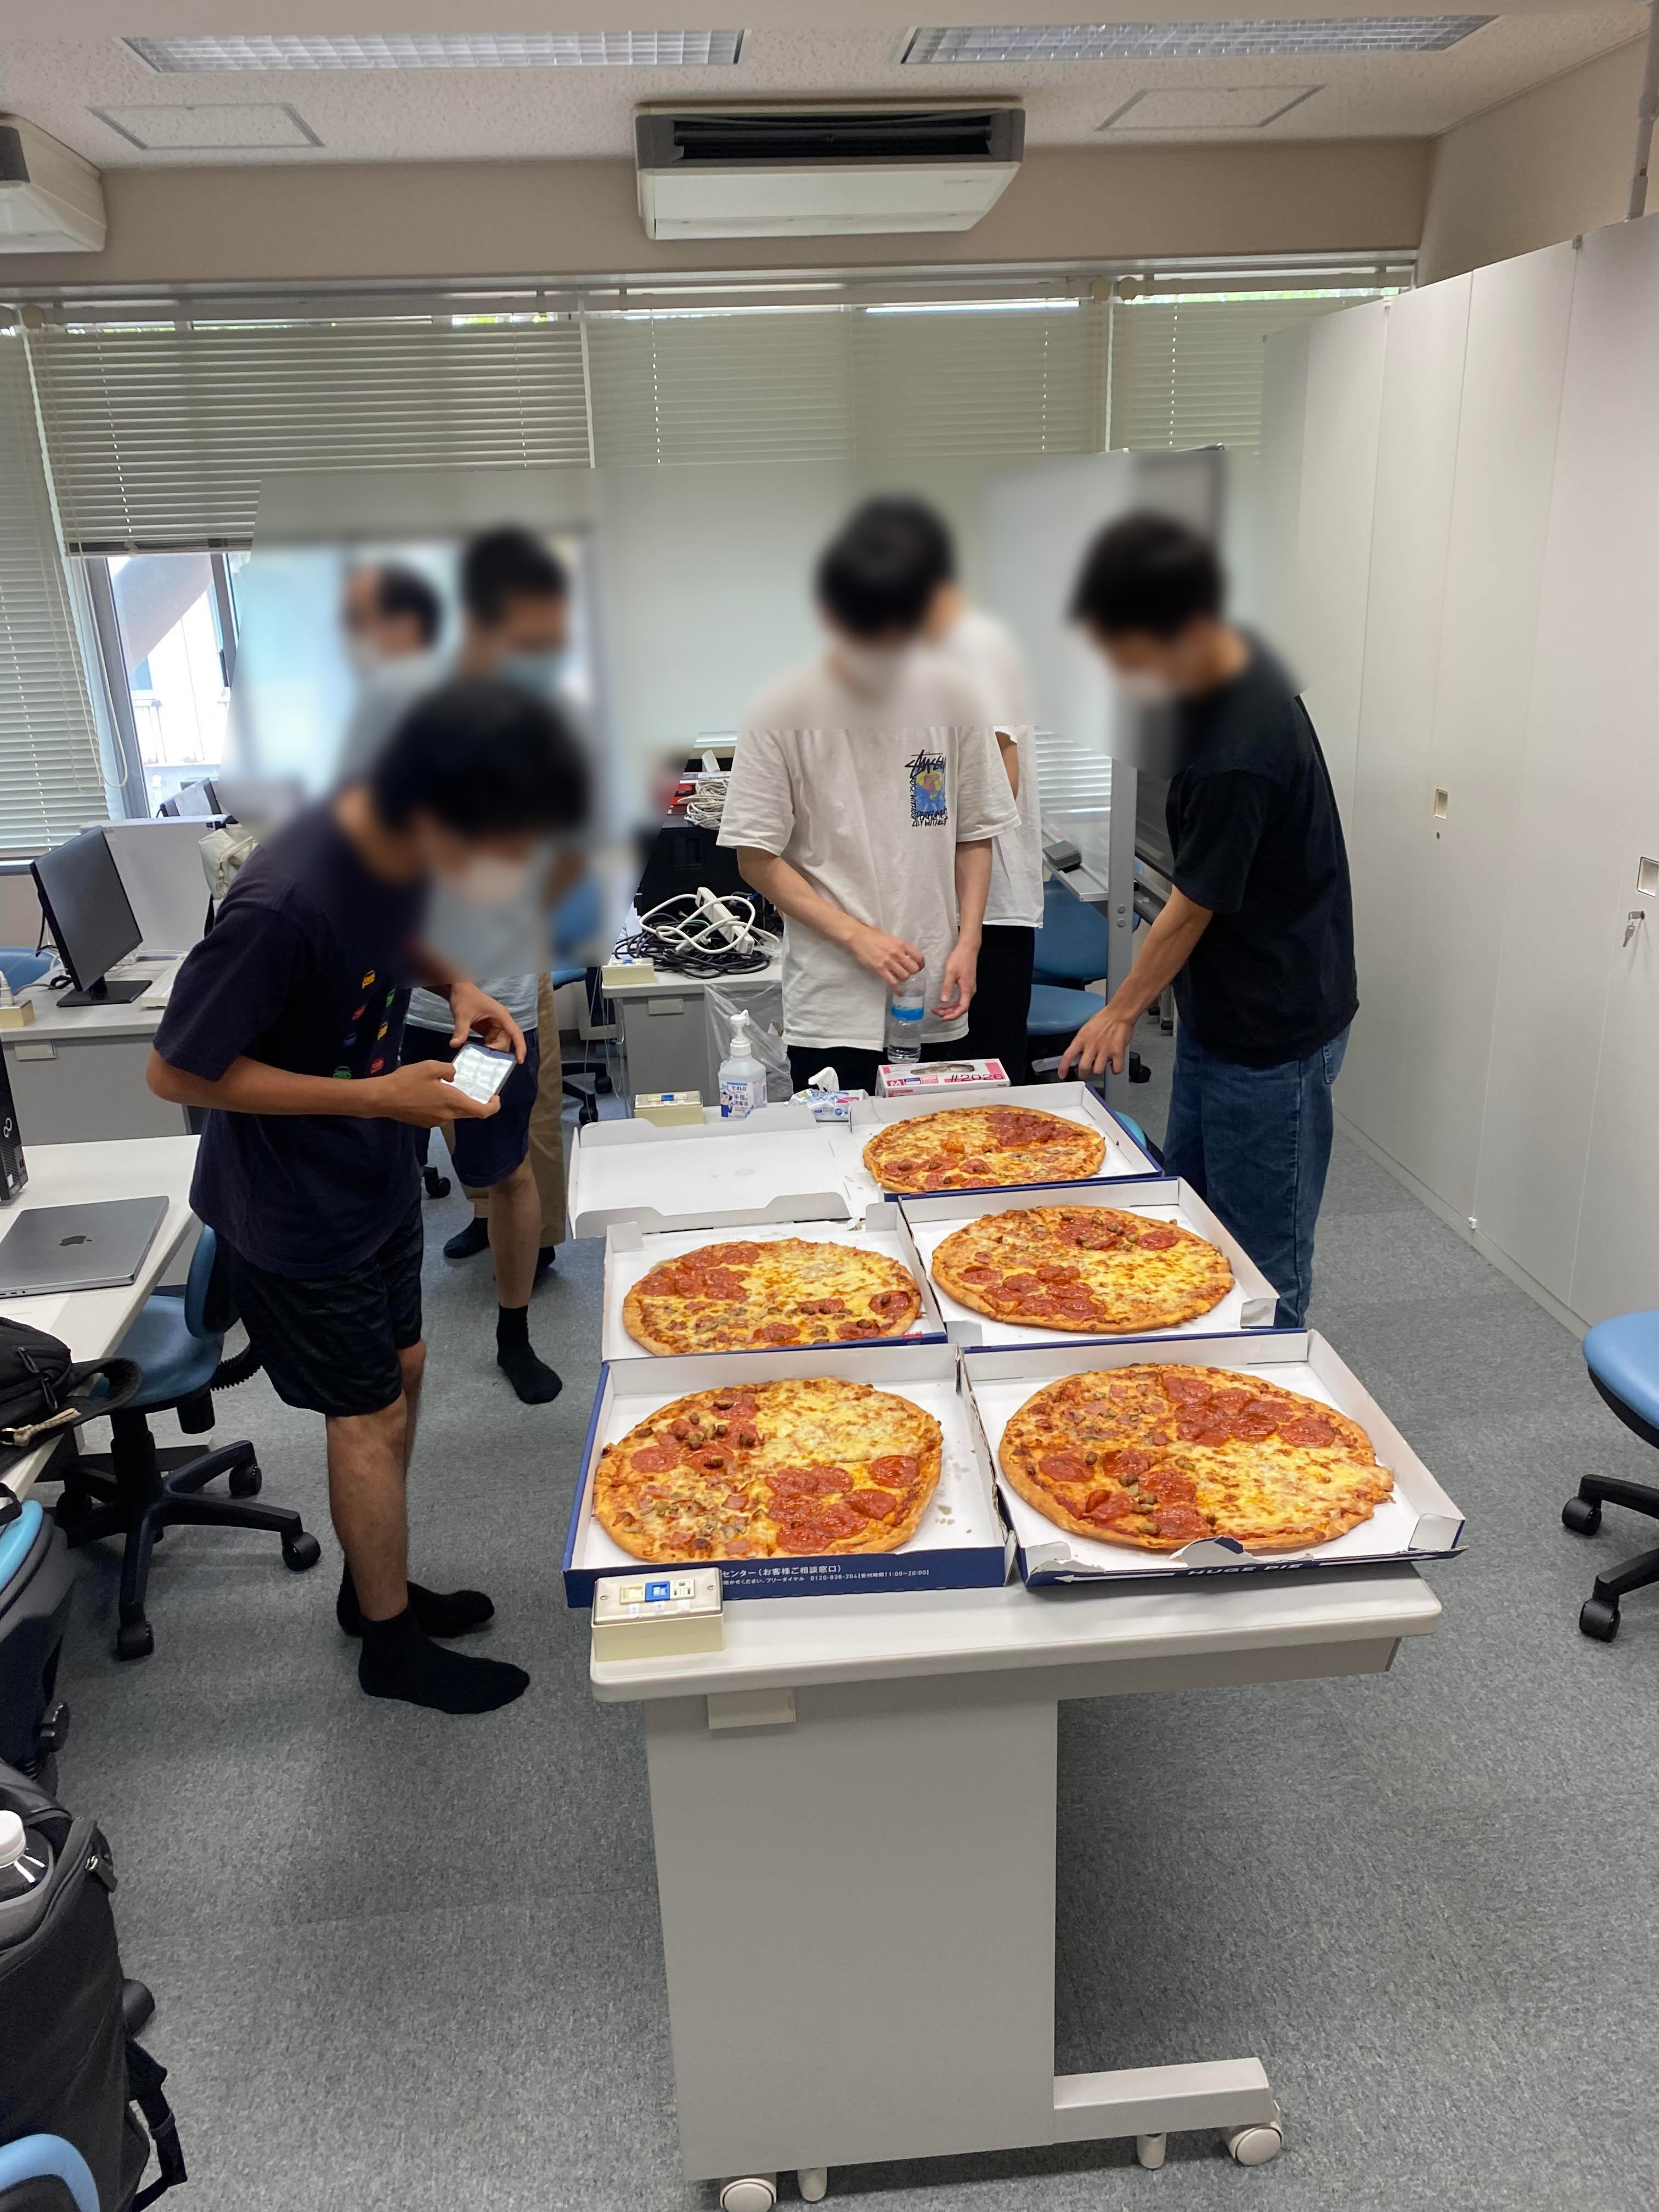 お昼ご飯はピザ。Bitcoin Pizza Dayを意識したもの？かどうかはわかりません^^